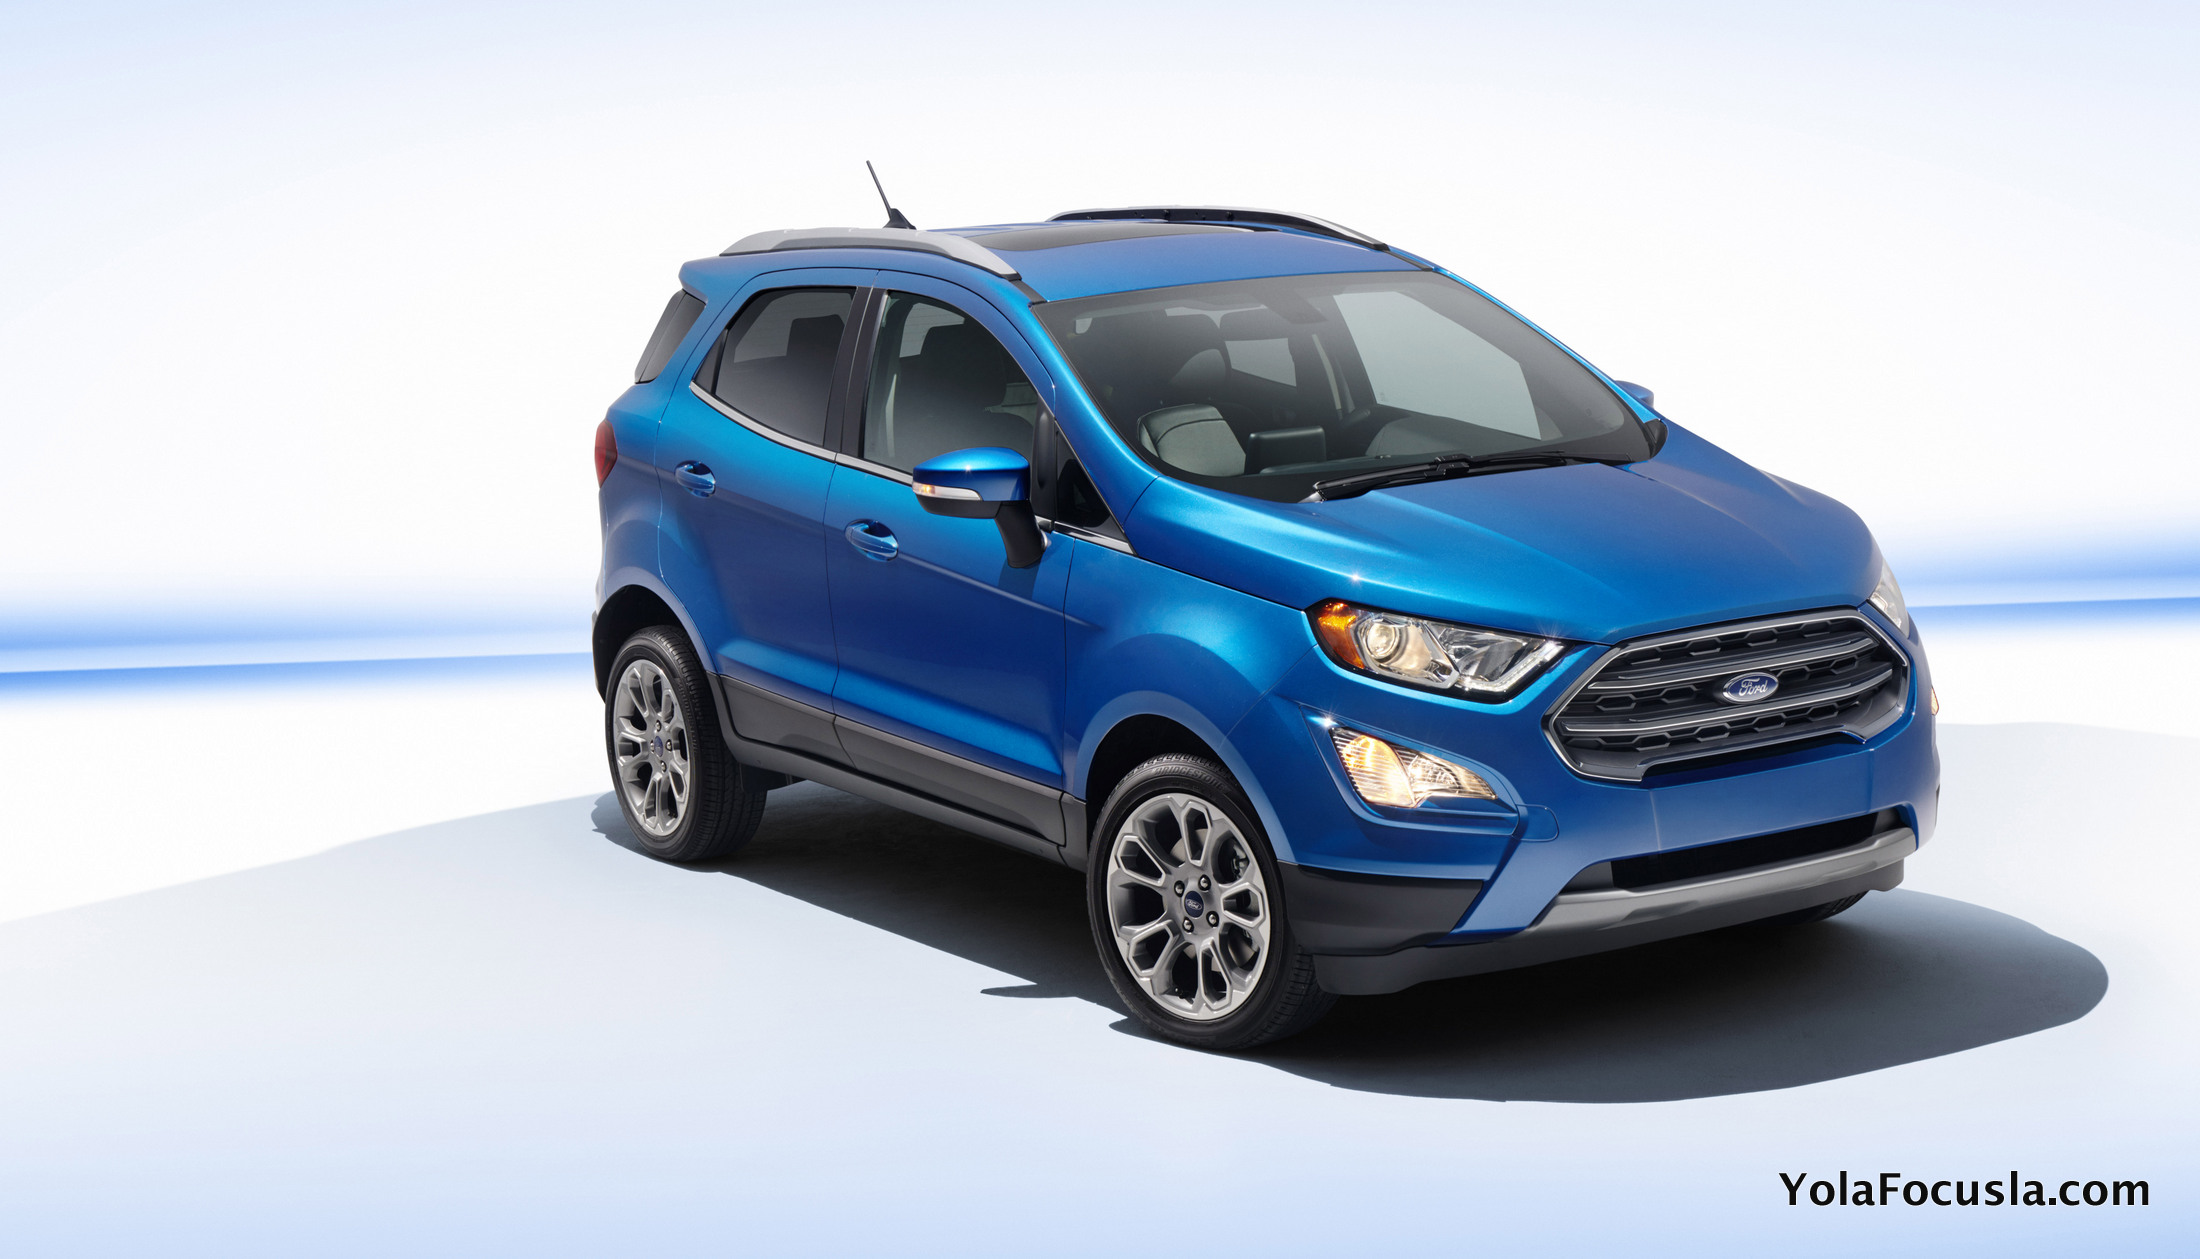 Купить Форд Экоспорт цена 2017 🚗 Ford EcoSport новый, все ...